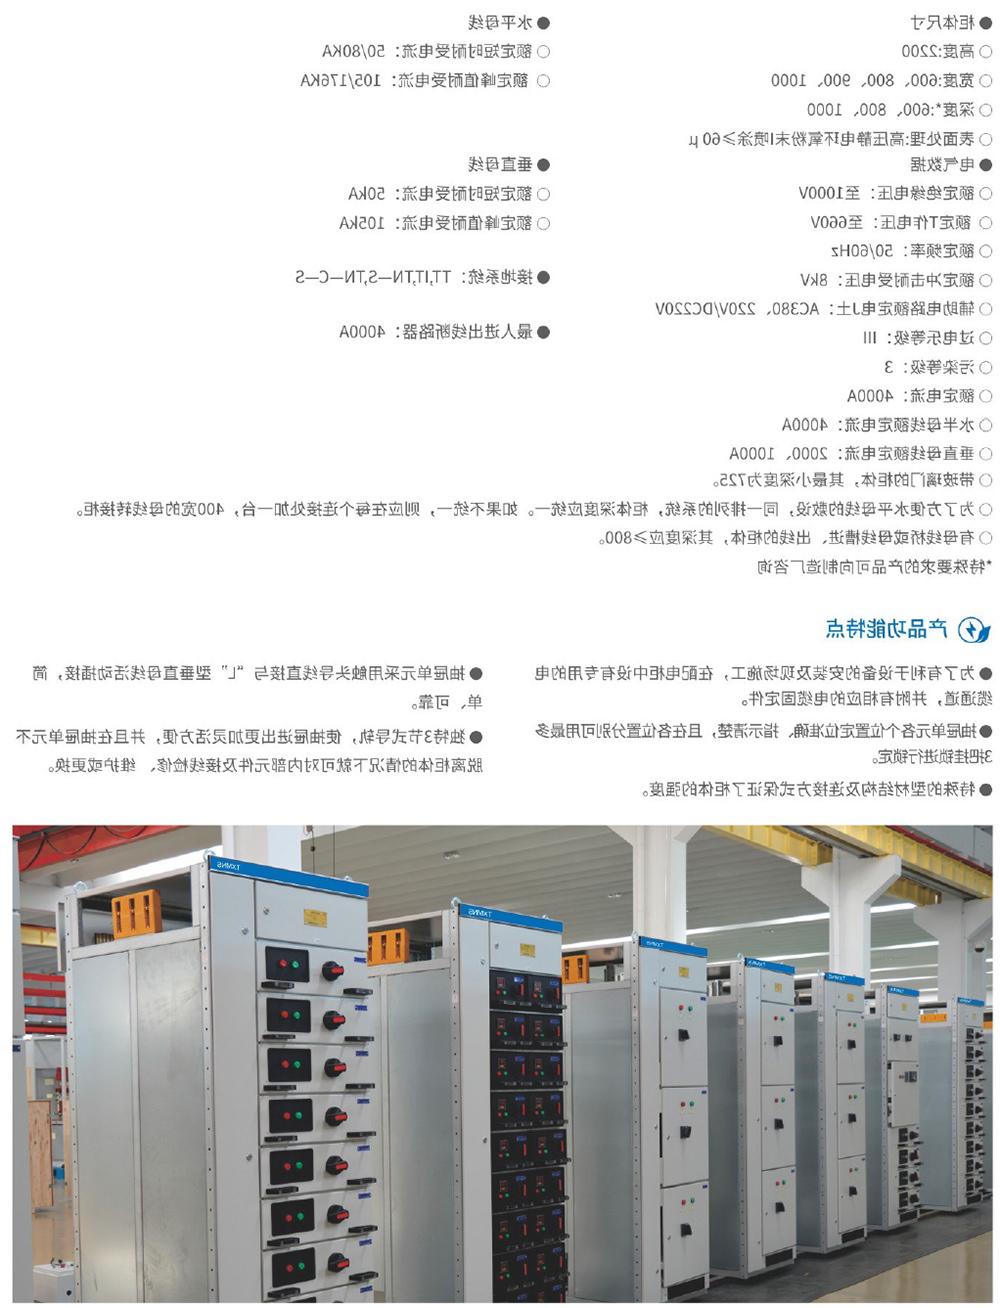 天翔电气产品选型手册-32.jpg